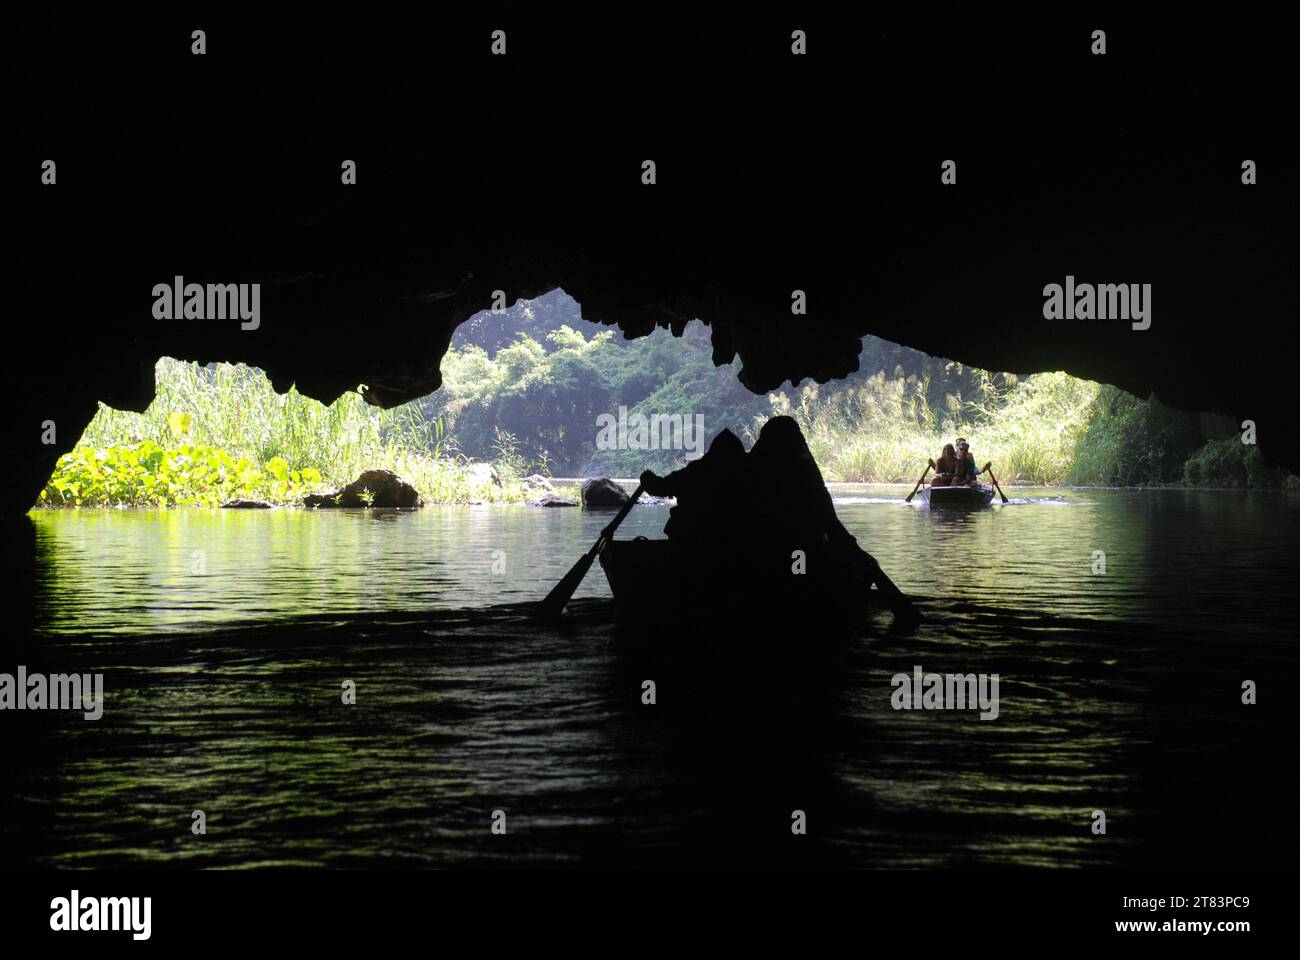 Les touristes montent dans des bateaux à rames vietnamiens traditionnels parmi les falaises de calcaire et les grottes de Tam COC Banque D'Images